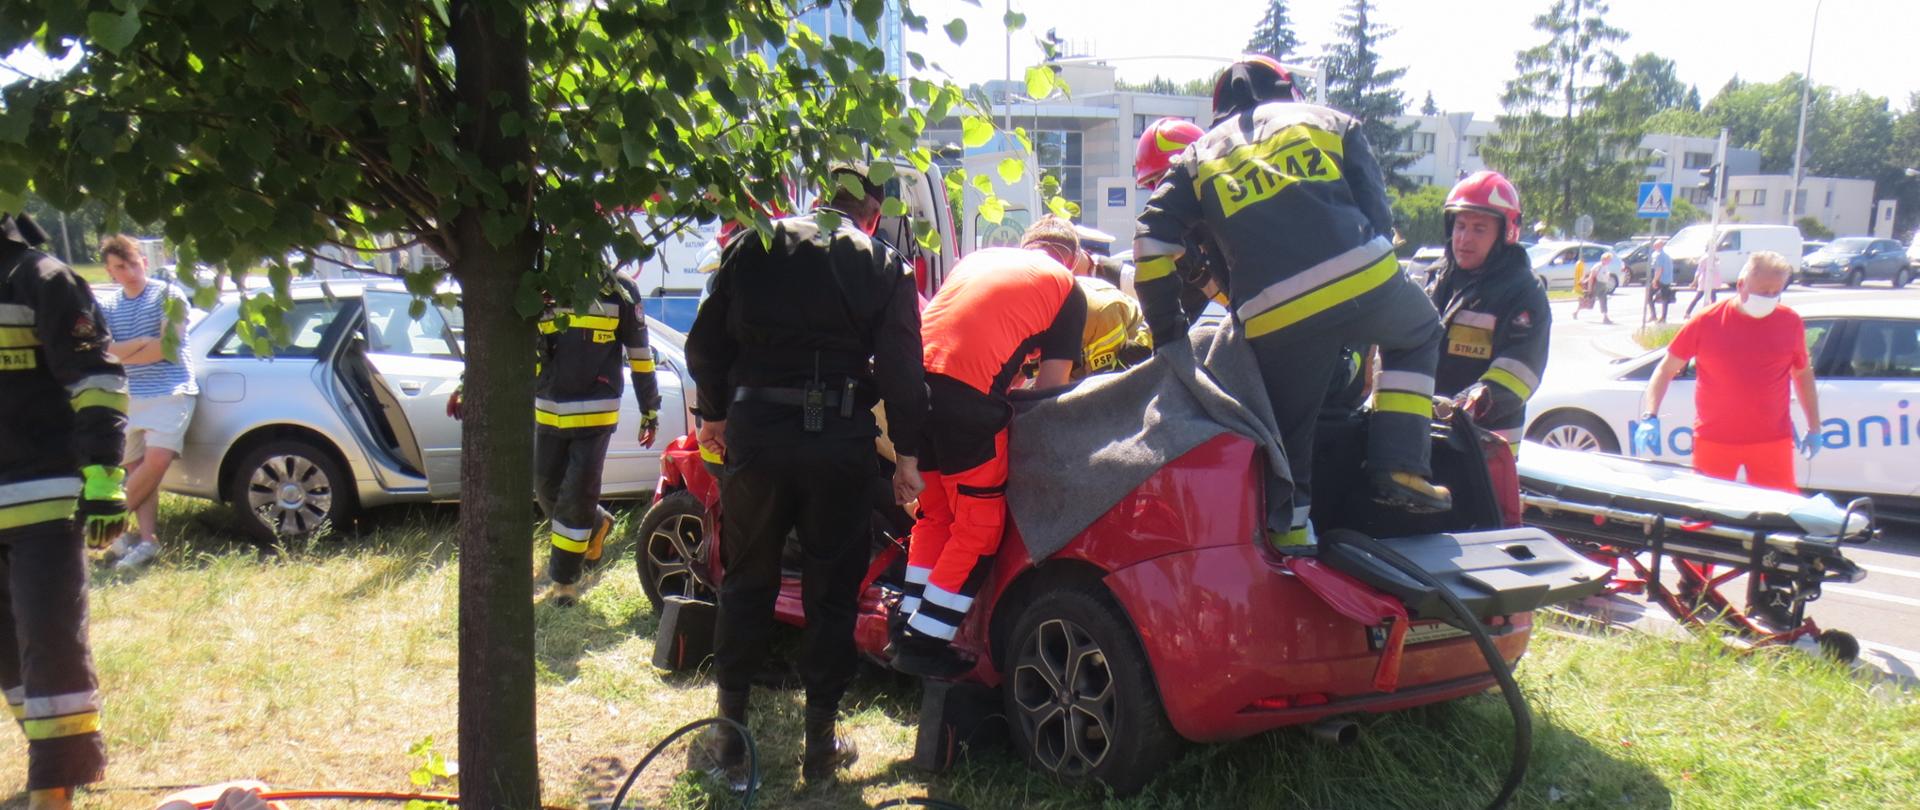 Na zdjęciu widoczny jest uszkodzony samochód osobowy, strażacy odcięli dach pojazdu, przed samochodem widoczny jest sprzęt hydrauliczny